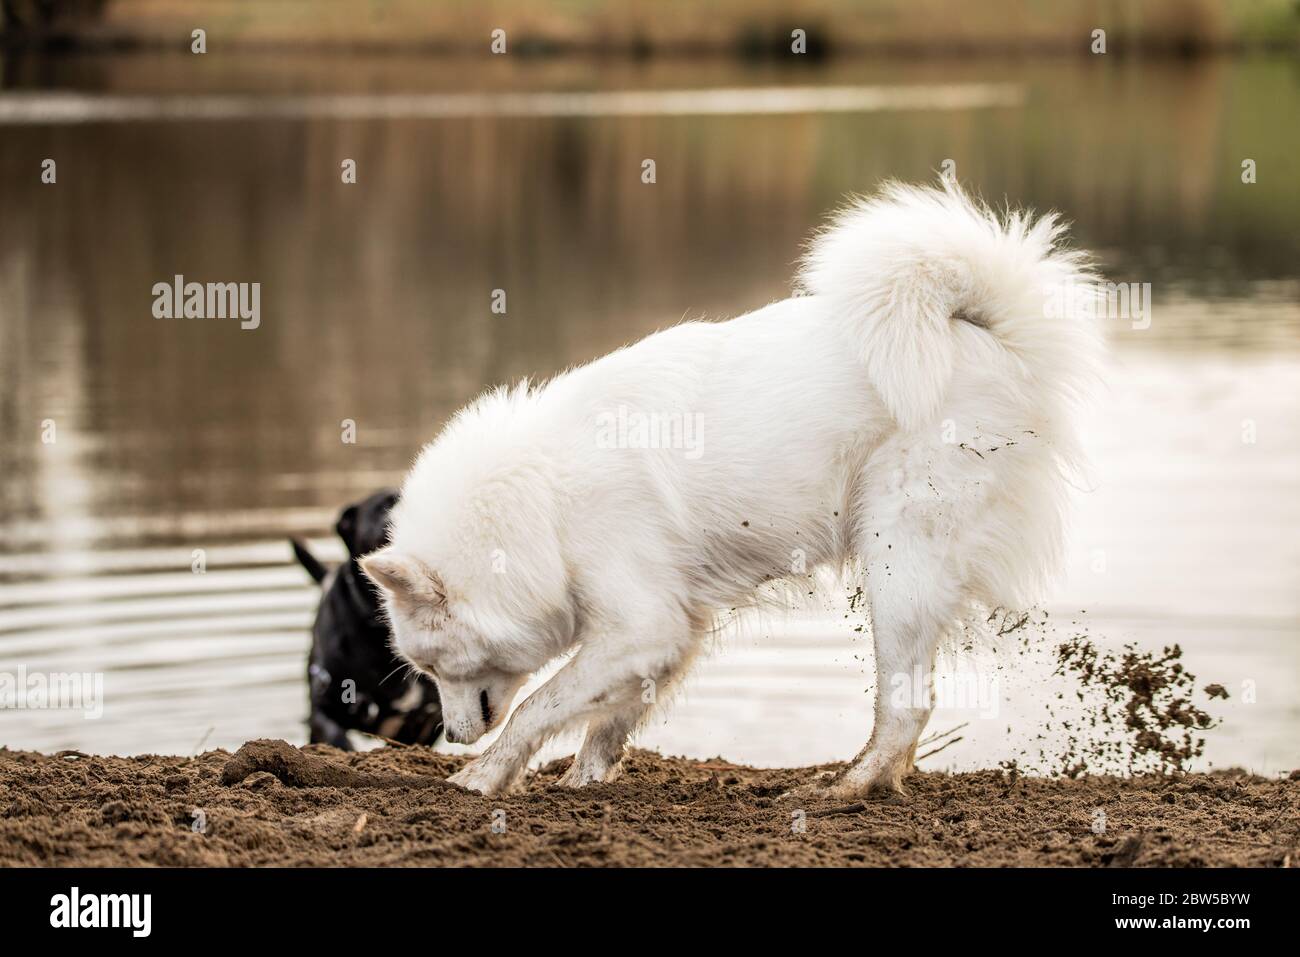 Carino, bianco soffice cane Samoied scava un buco nella sporcizia Foto Stock